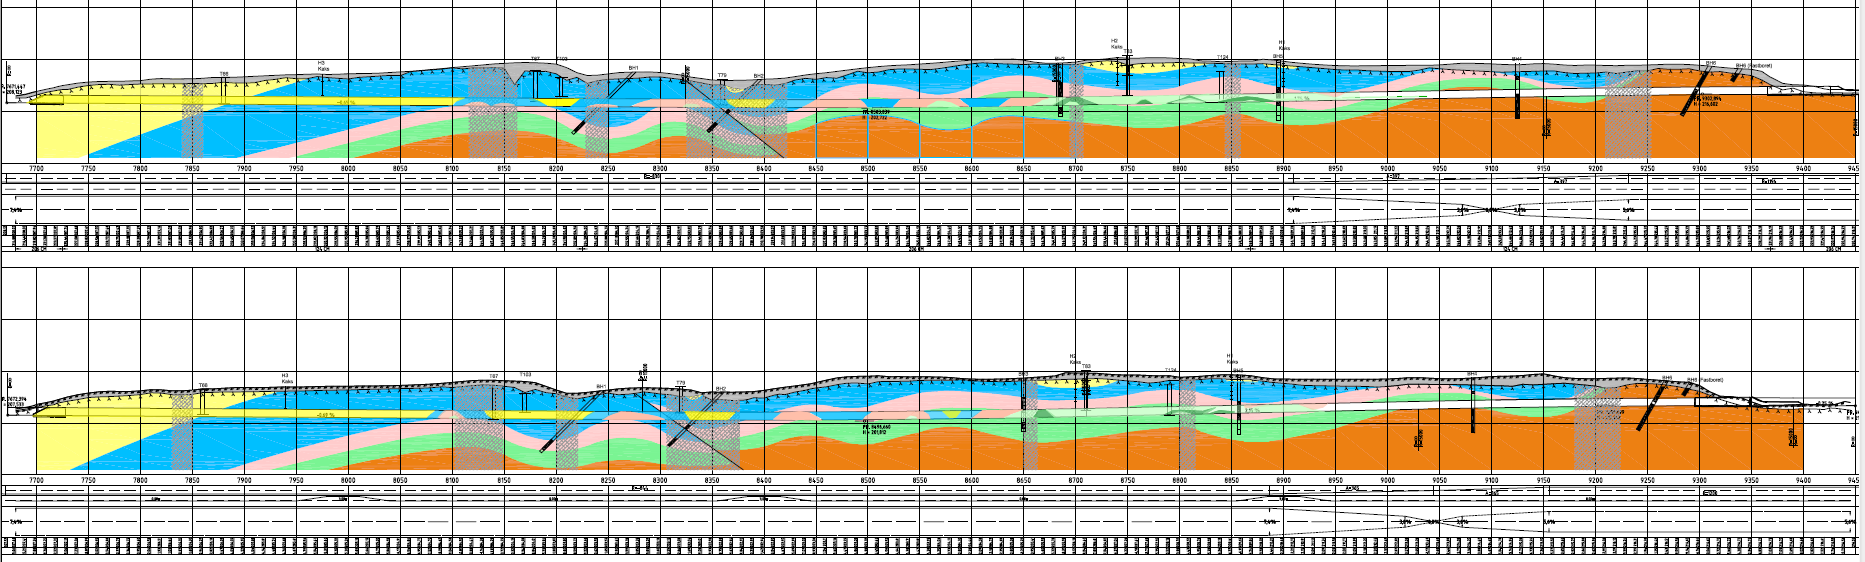 Svarte leirskifrar i stratigrafien på Gran Svarte leirskifrar i tunnelløpet: Galgebergleddet (3bβ):